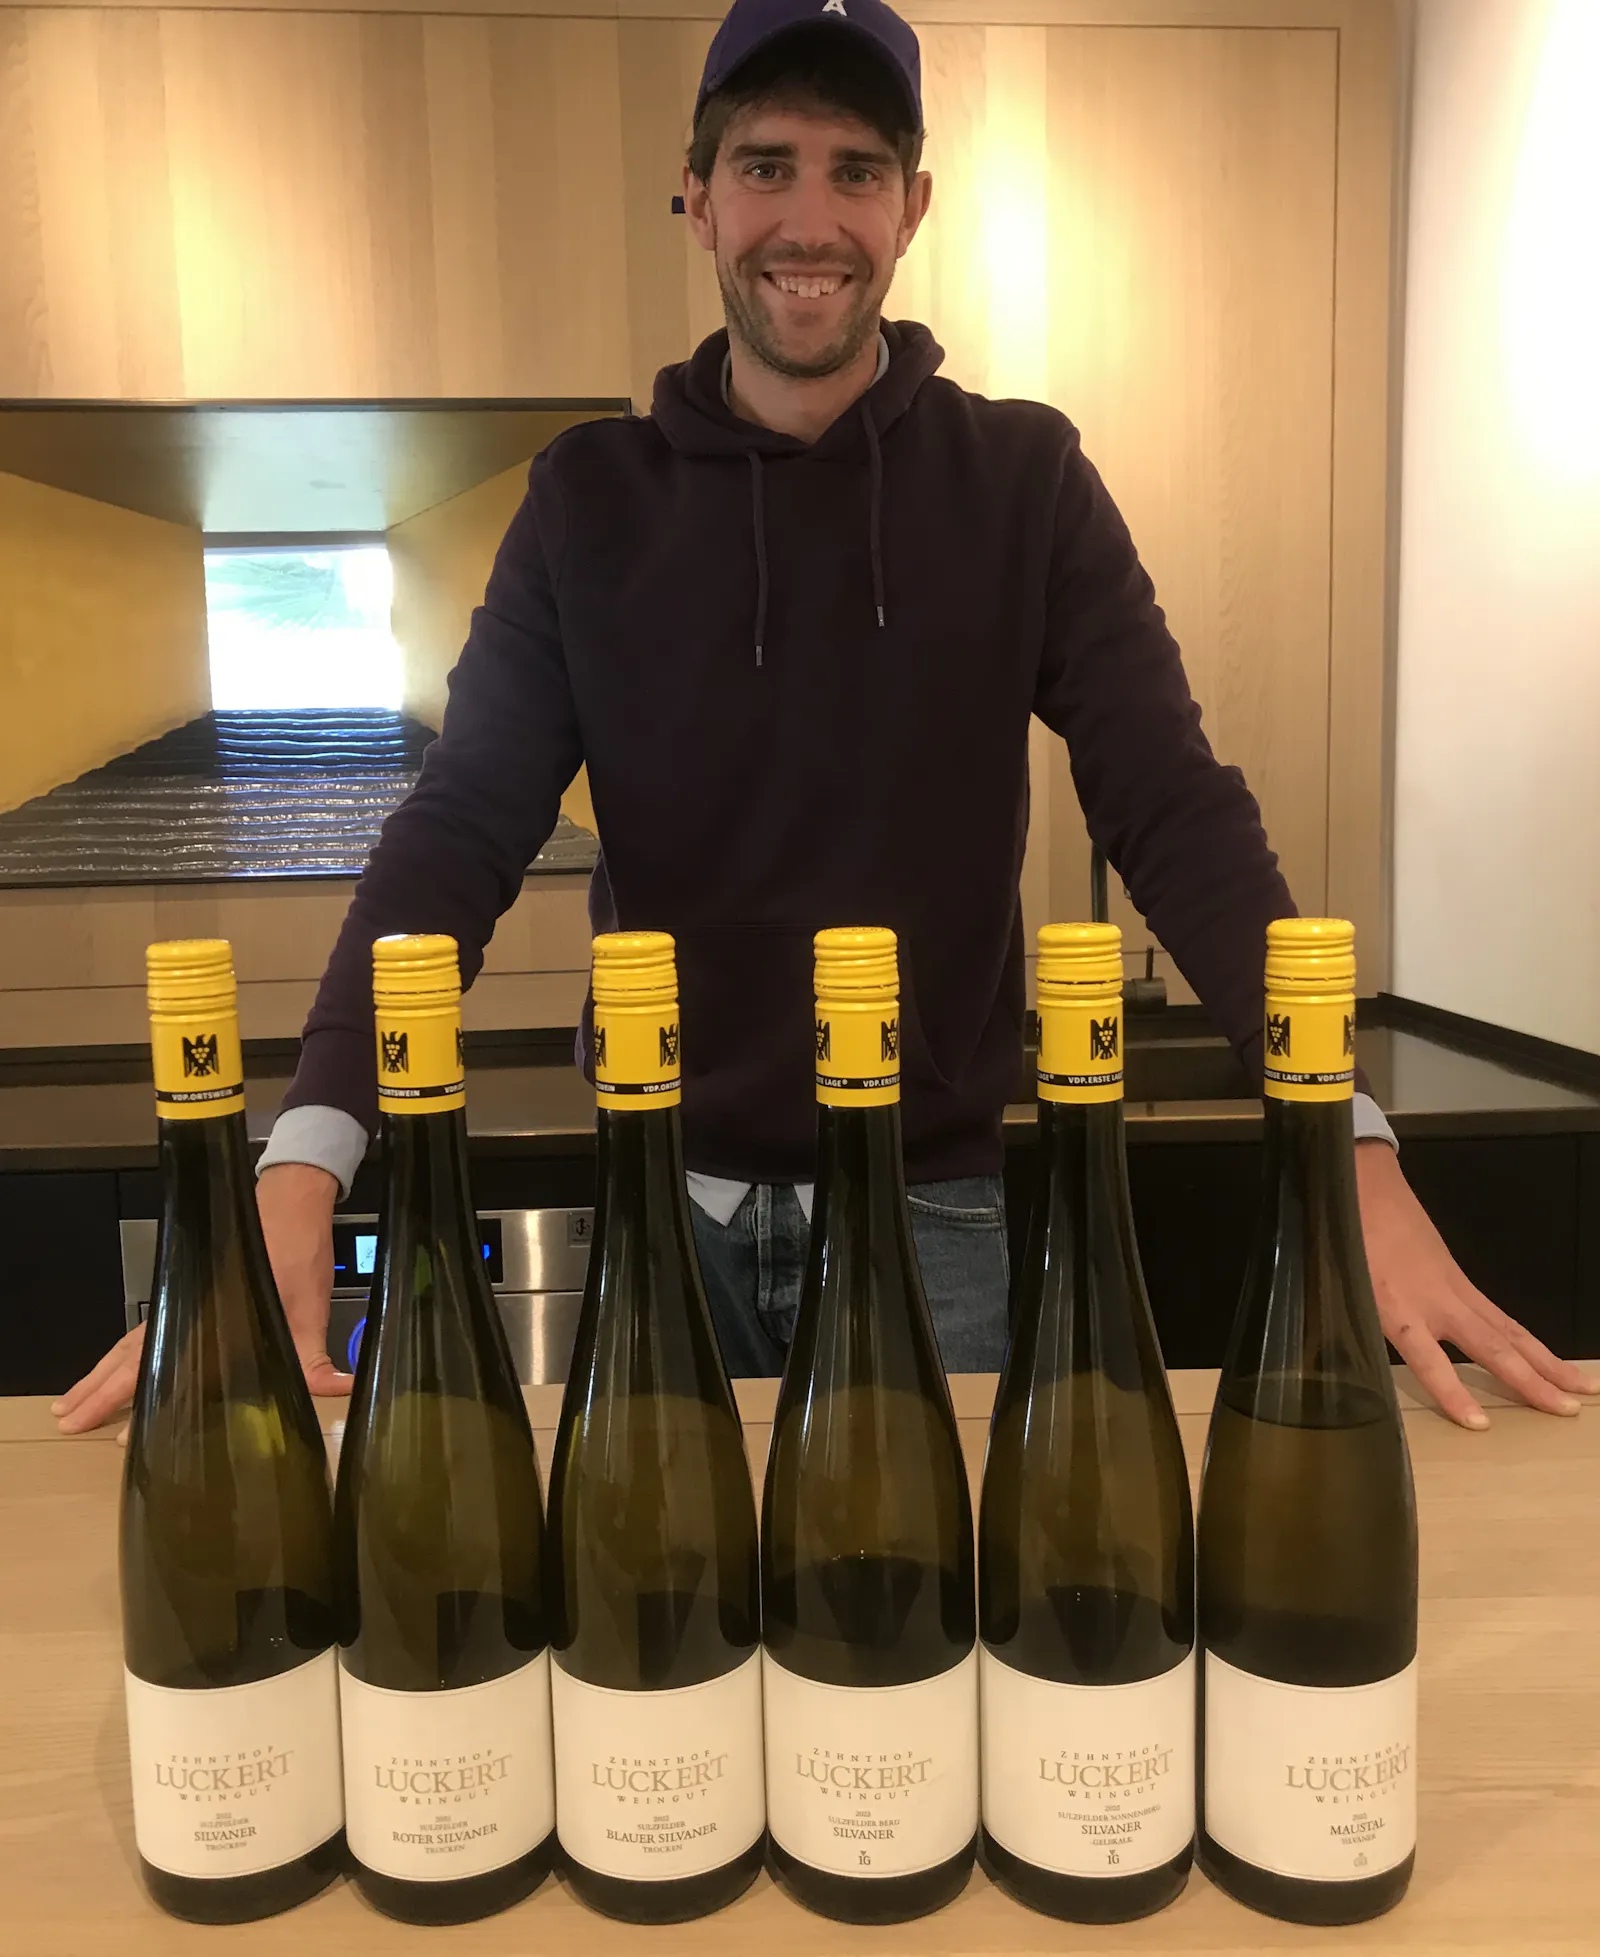 Philipp Luckert steht hinter einem Trsen, auf dem sechs Weinflaschen stehen